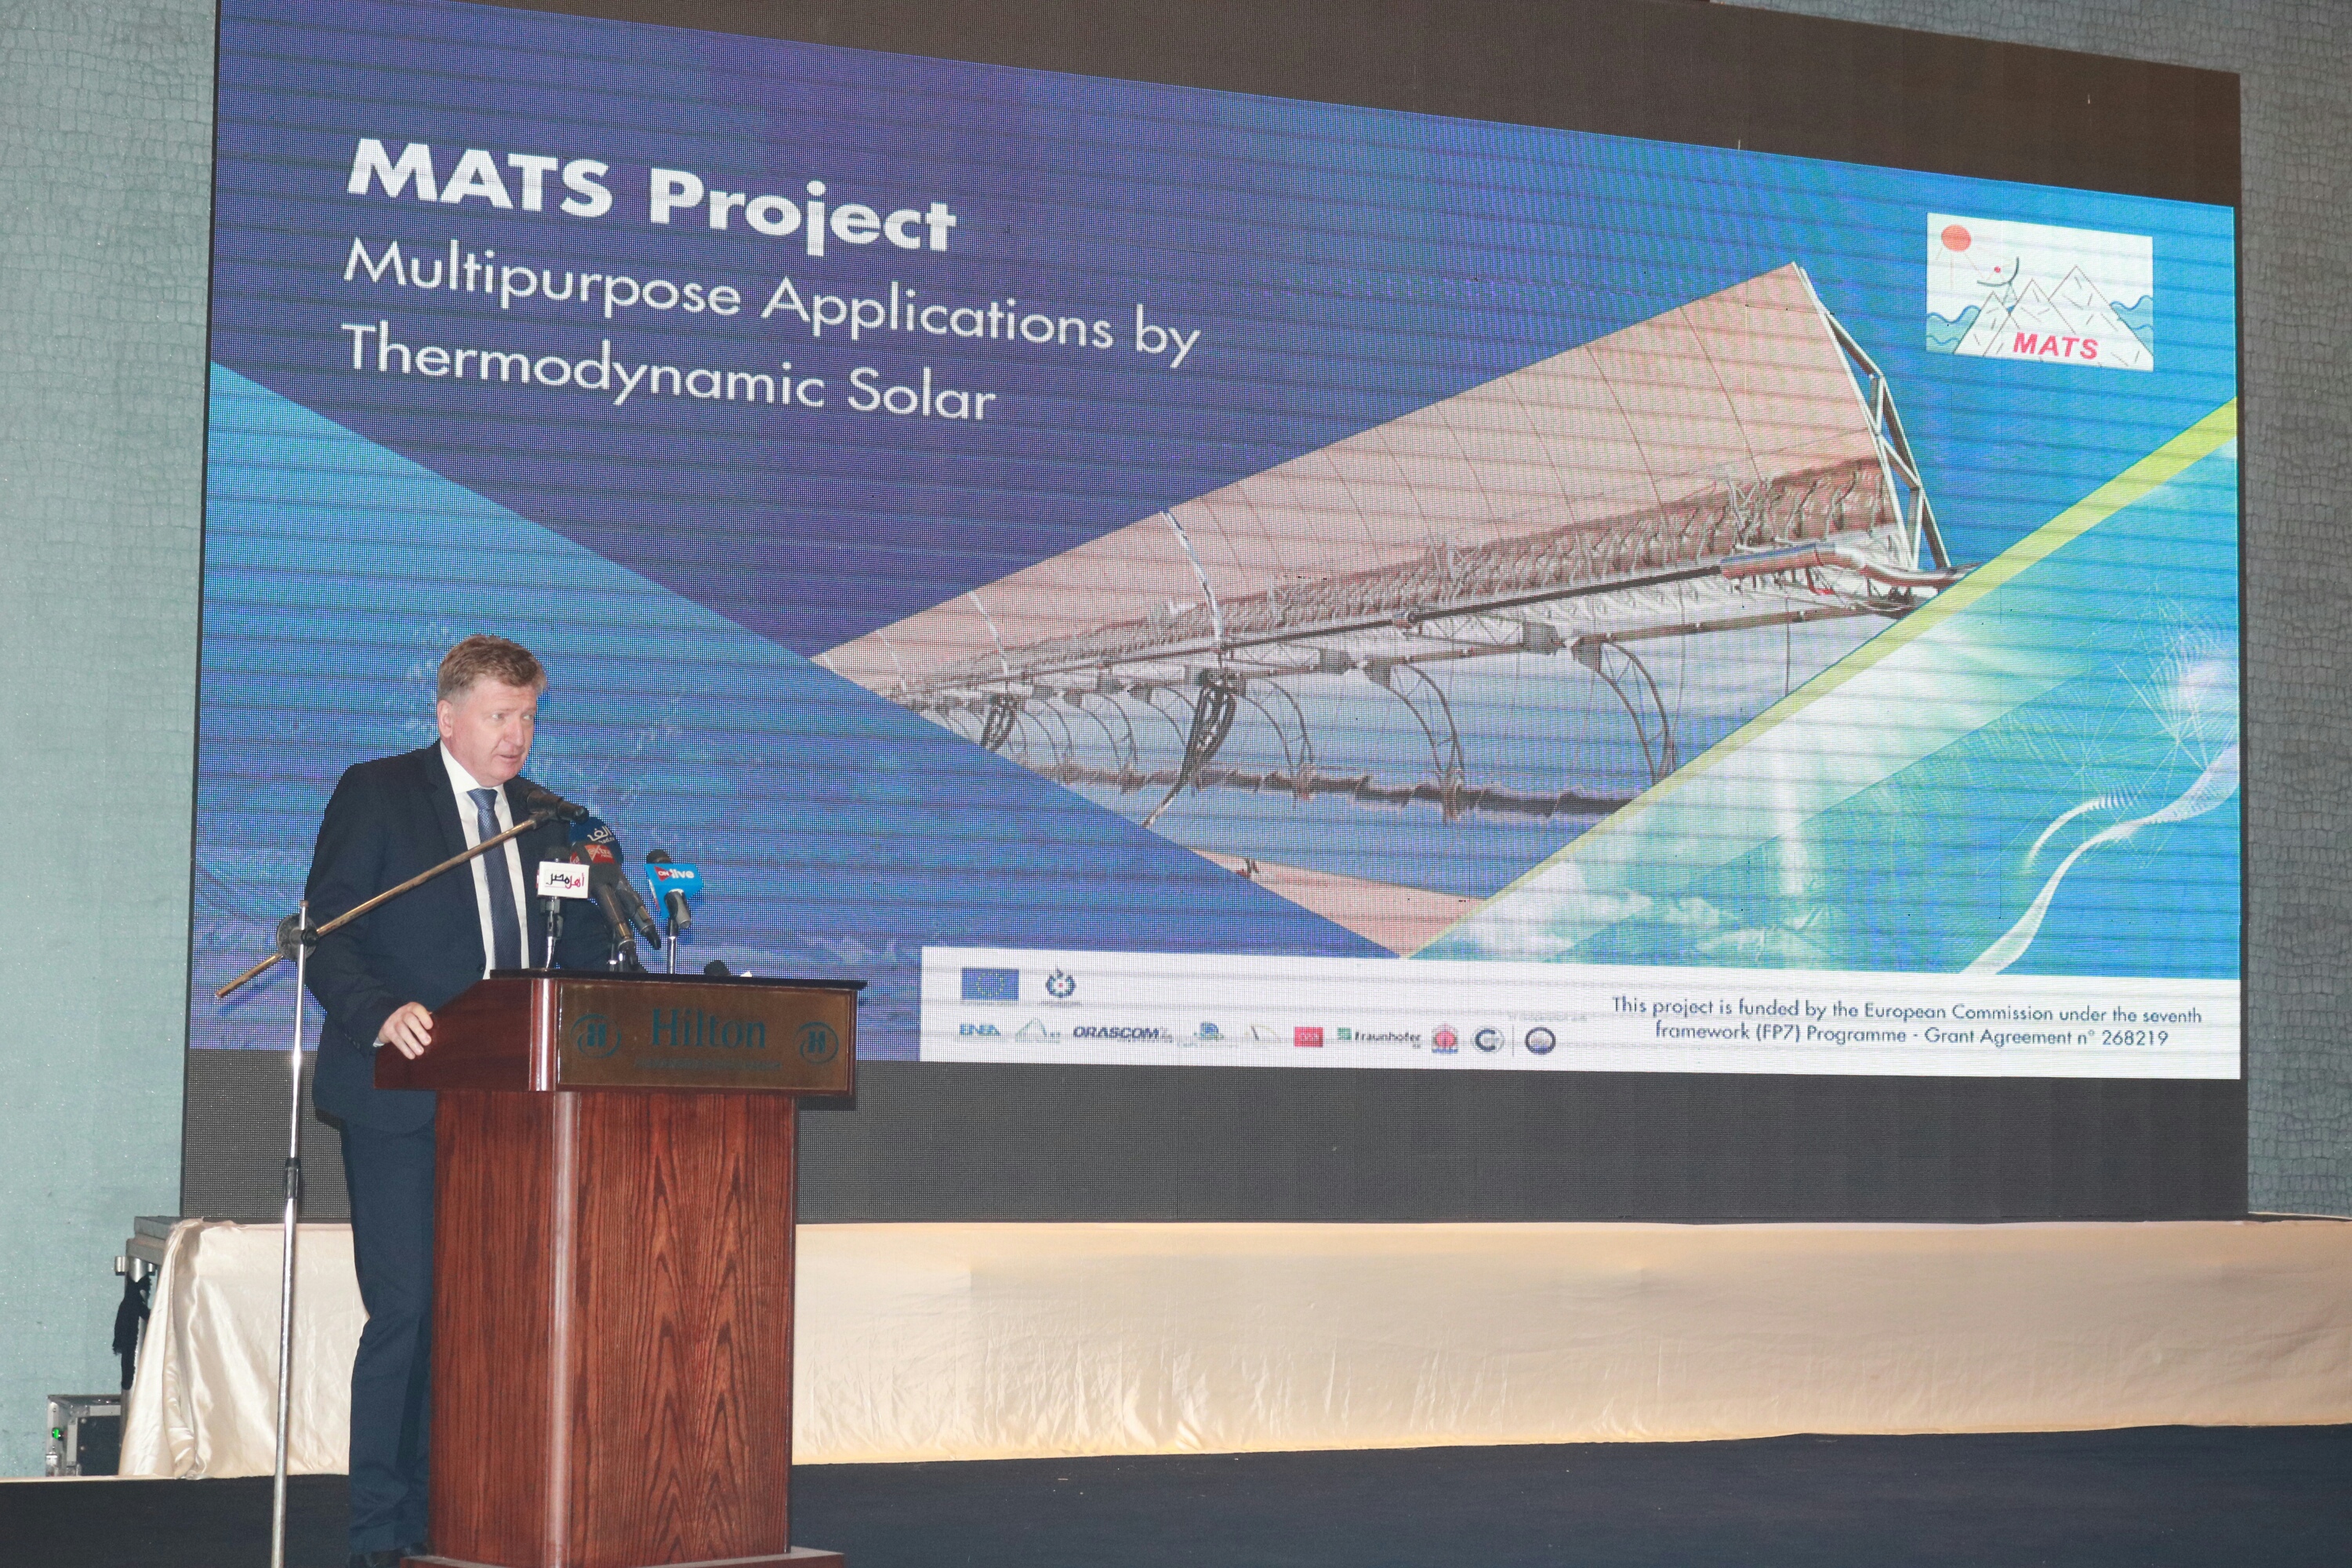 سفير الاتحاد الأوروبى فى افتتاح مشروع ماتس (1)